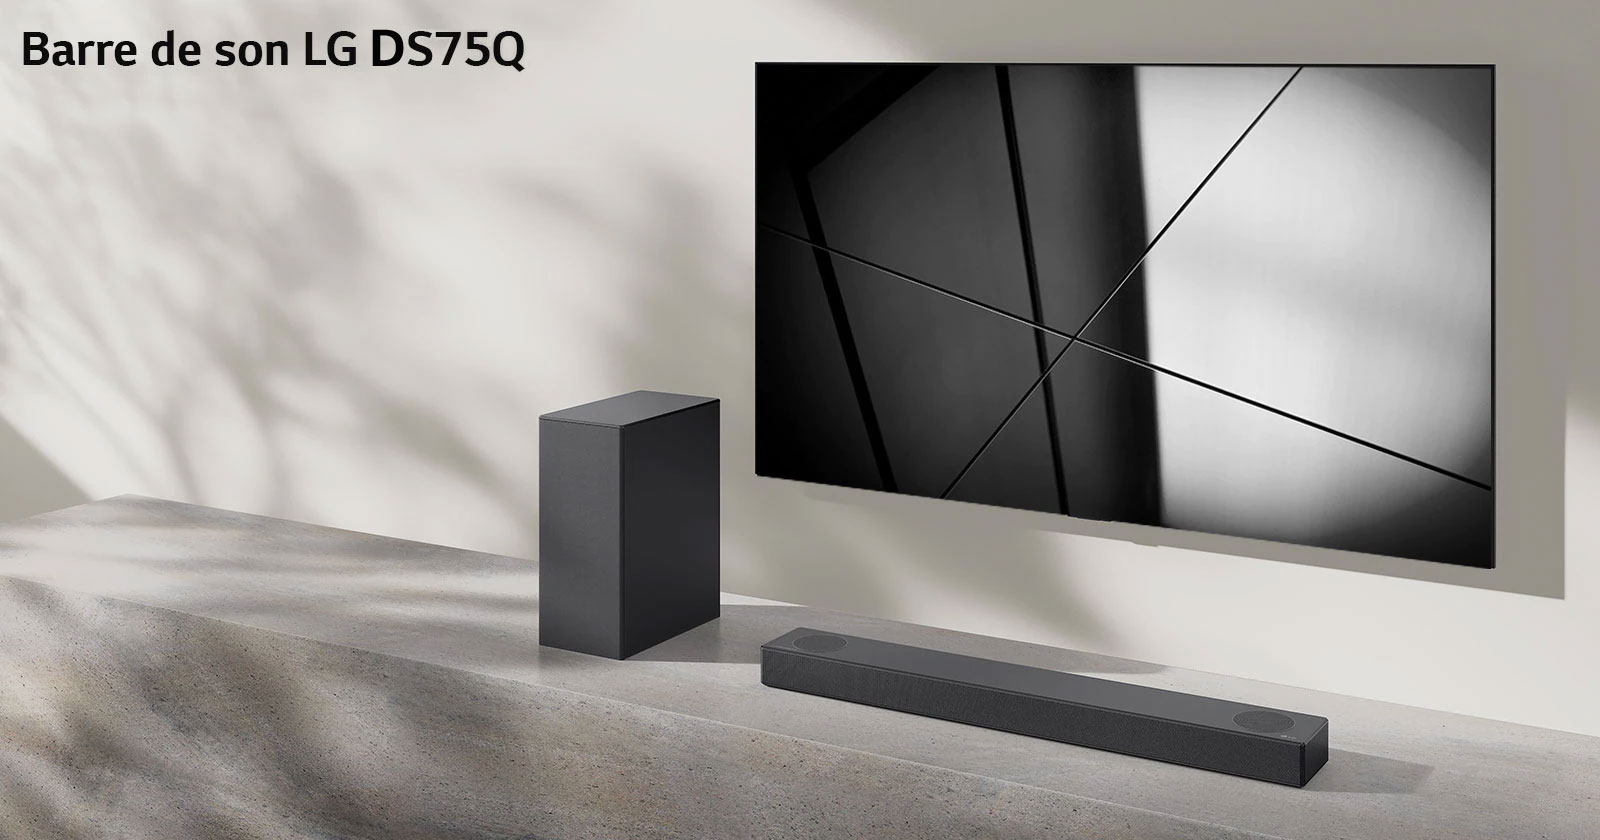 La barre de son DS75Q de LG et le téléviseur LG sont placés ensemble dans le salon. Le téléviseur est allumé et projette une image en noir et blanc.